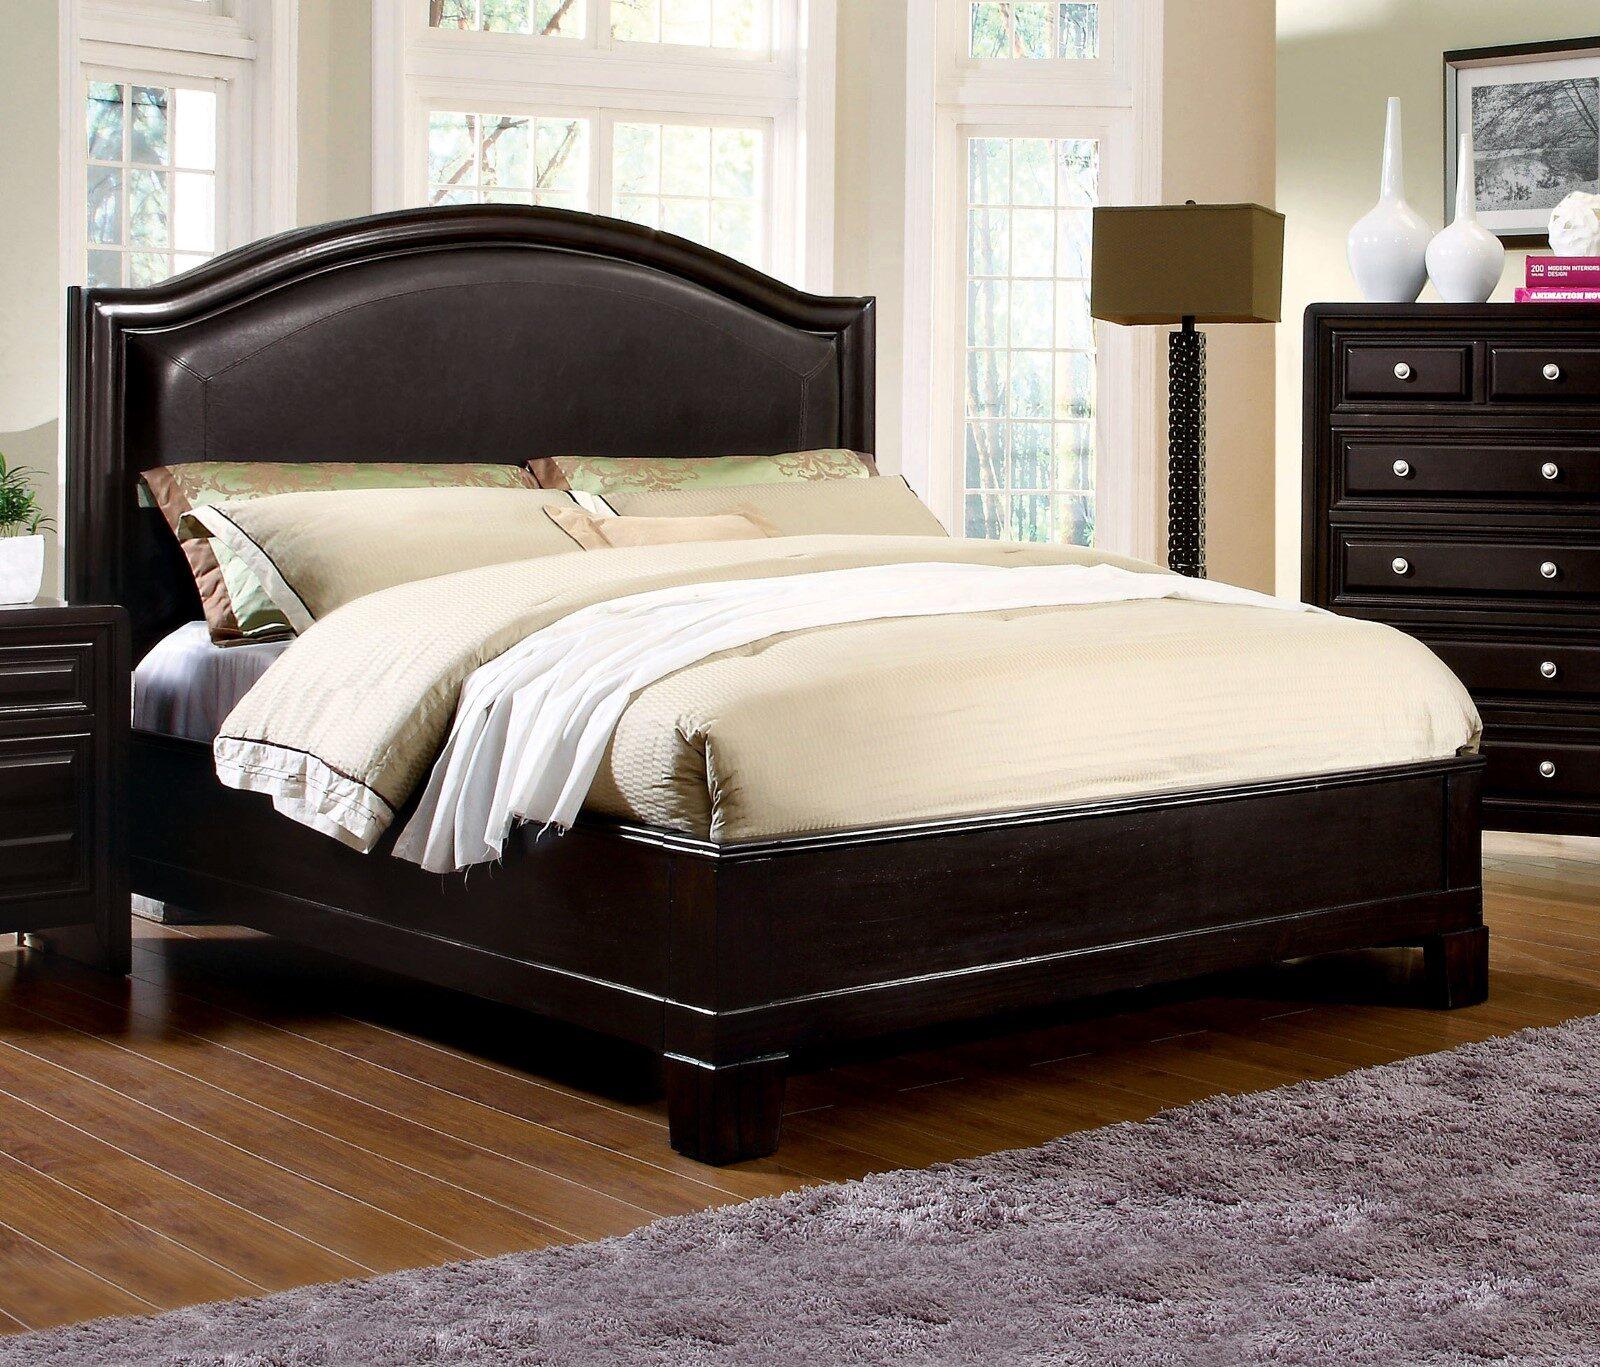 

    
Transitional Espresso Solid Wood King Bedroom Set 5pcs Furniture of America CM7058-EK Winsor
